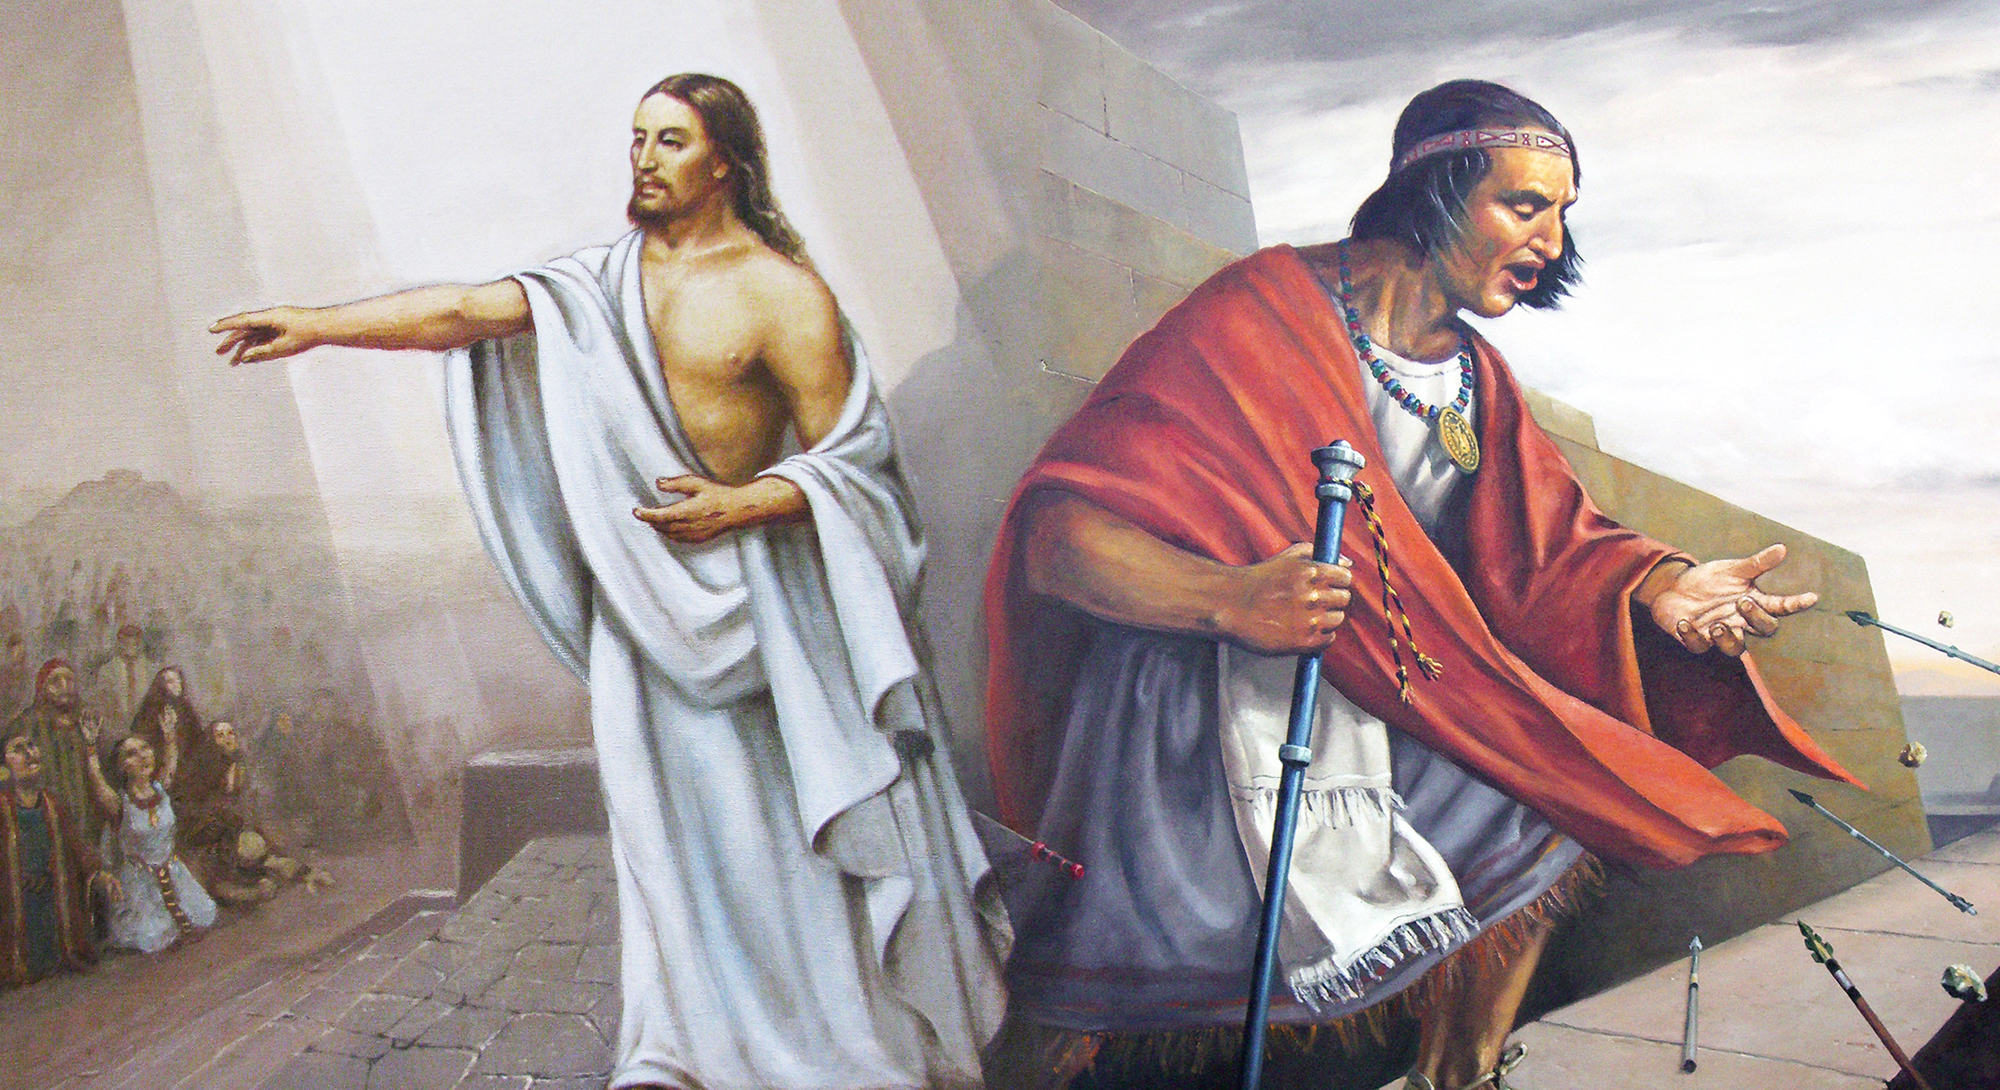 Composición "He aquí soy Jesucristo" y "Samuel en la muralla" por Jorge Cocco